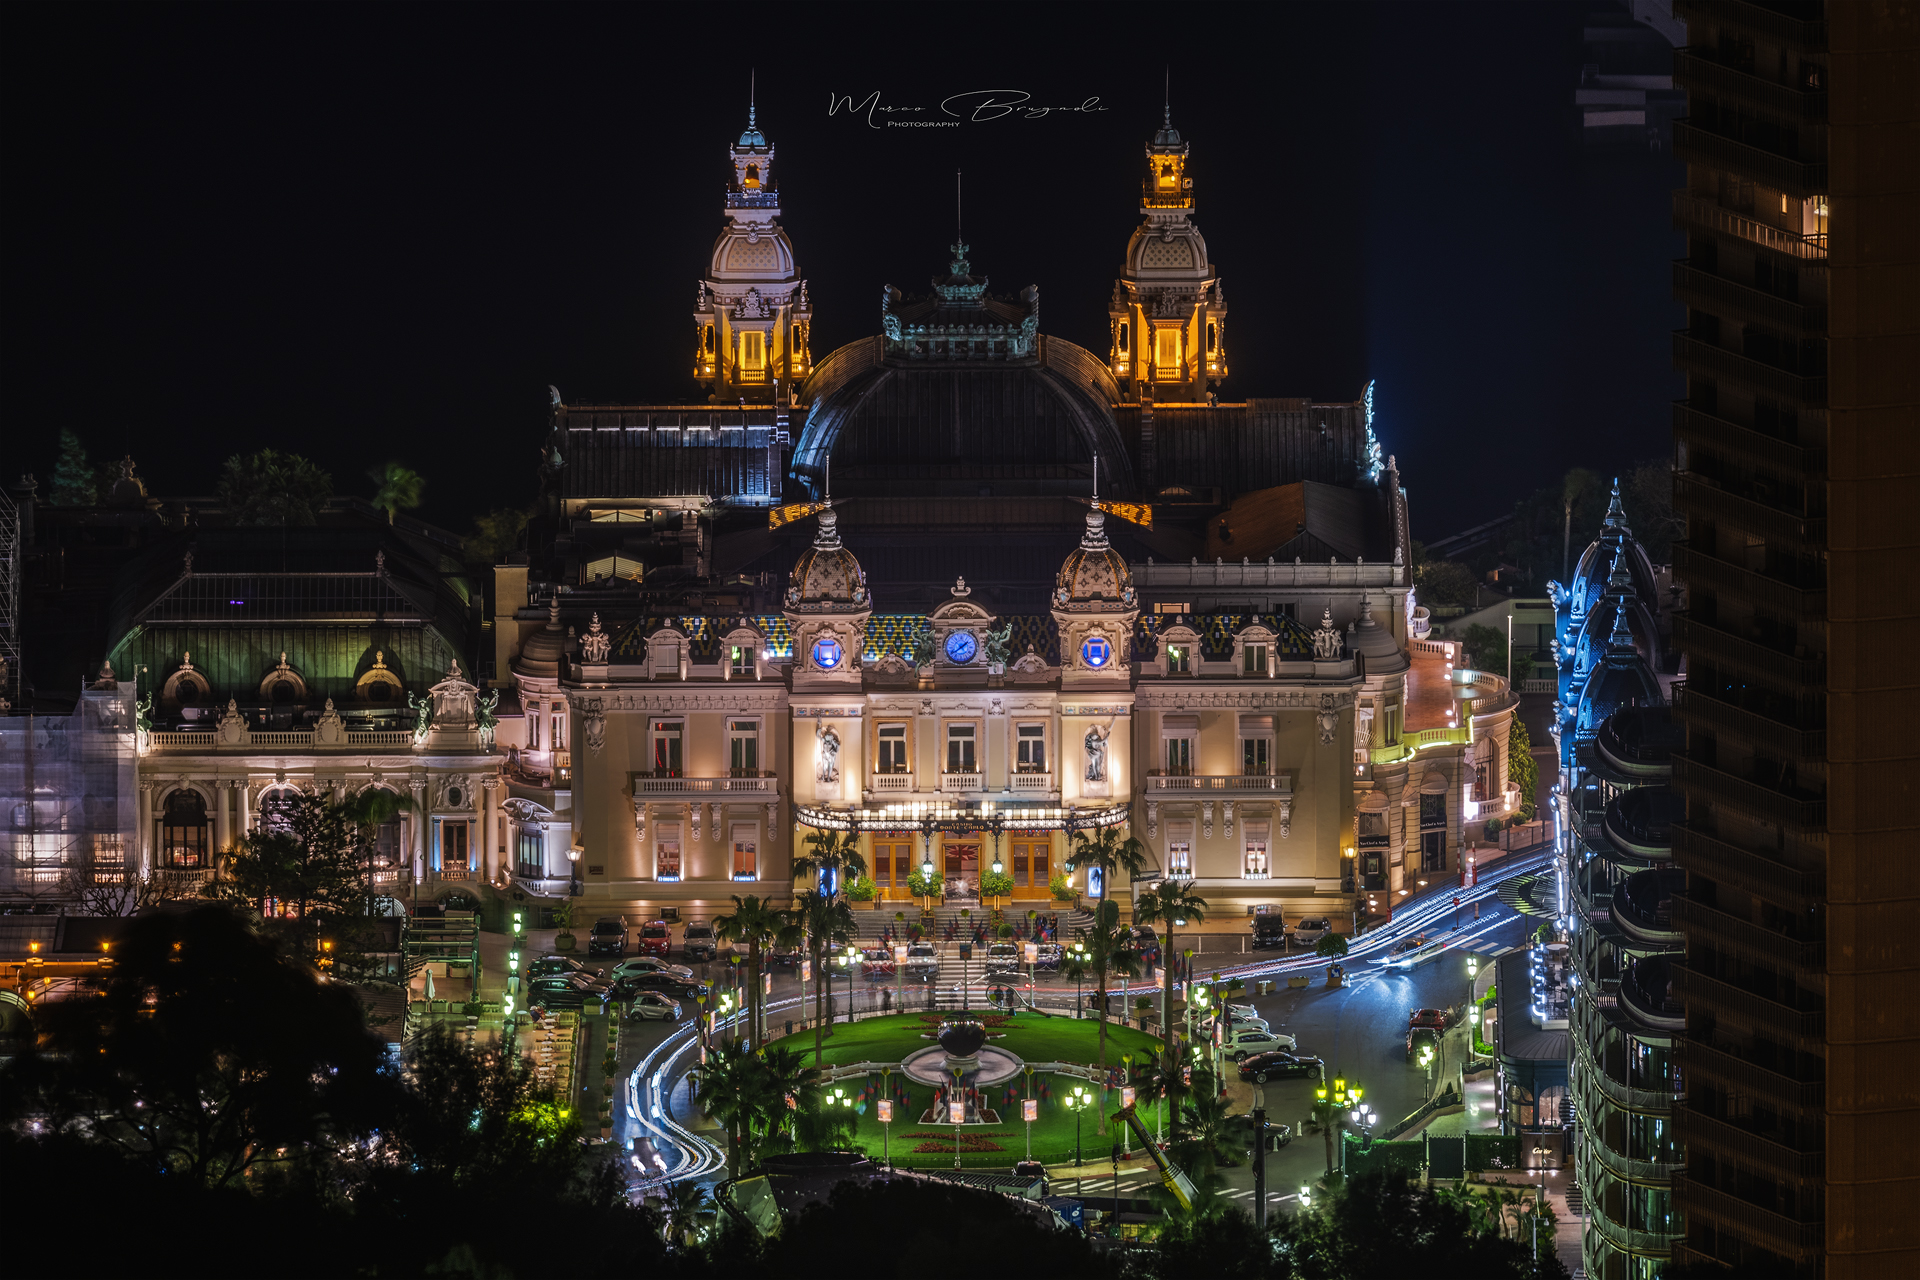 Casino Monte Carlo...